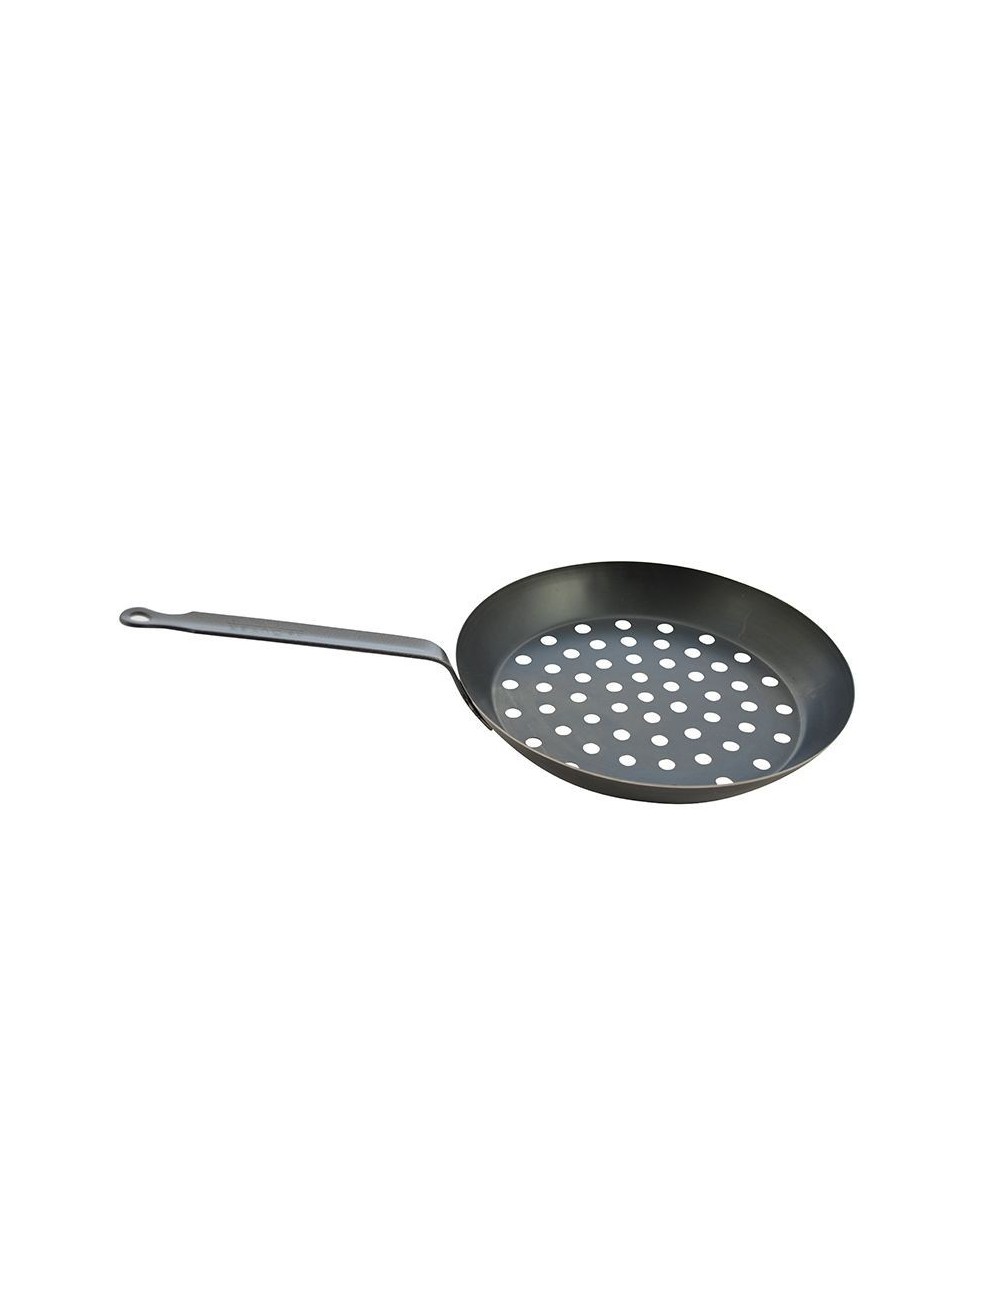 CHESTNUT PAN IN BLACK STEEL D28-COOKING UTENSIL